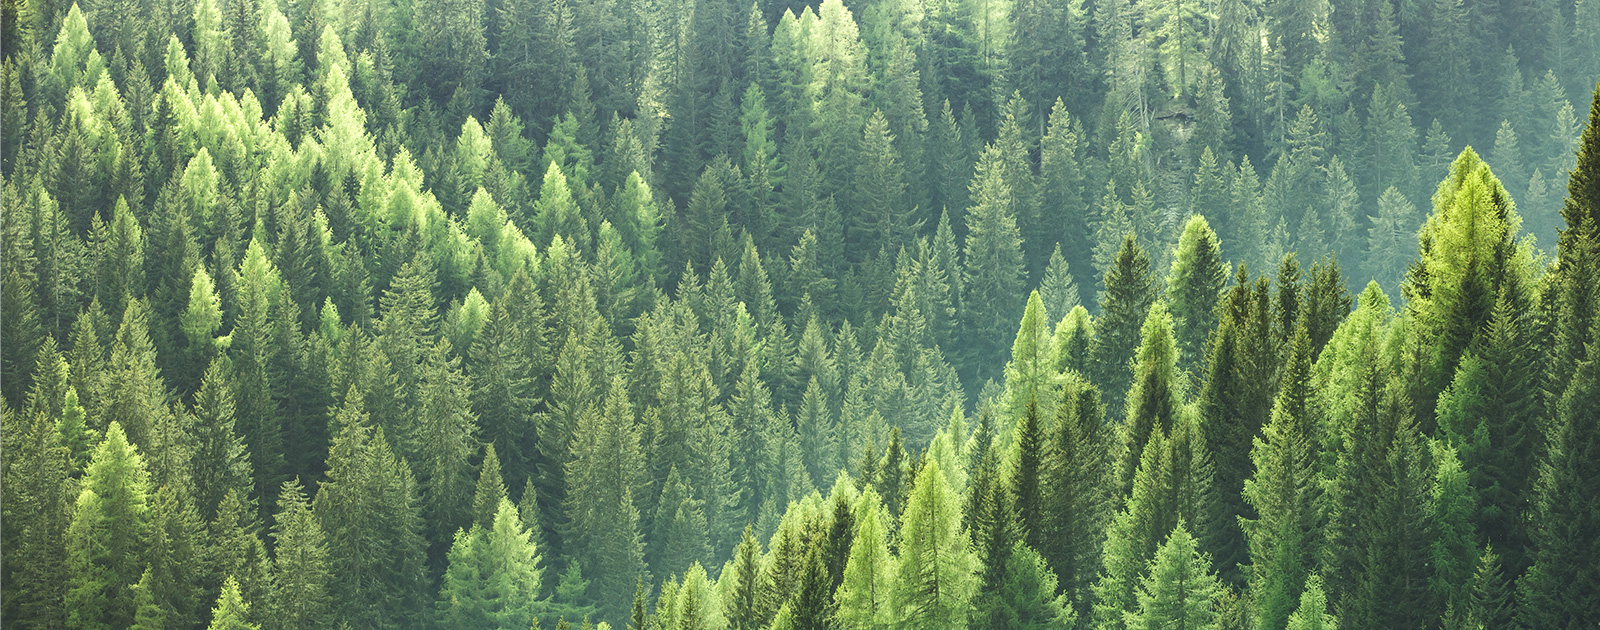 الأشجار – البيئة والاستدامة